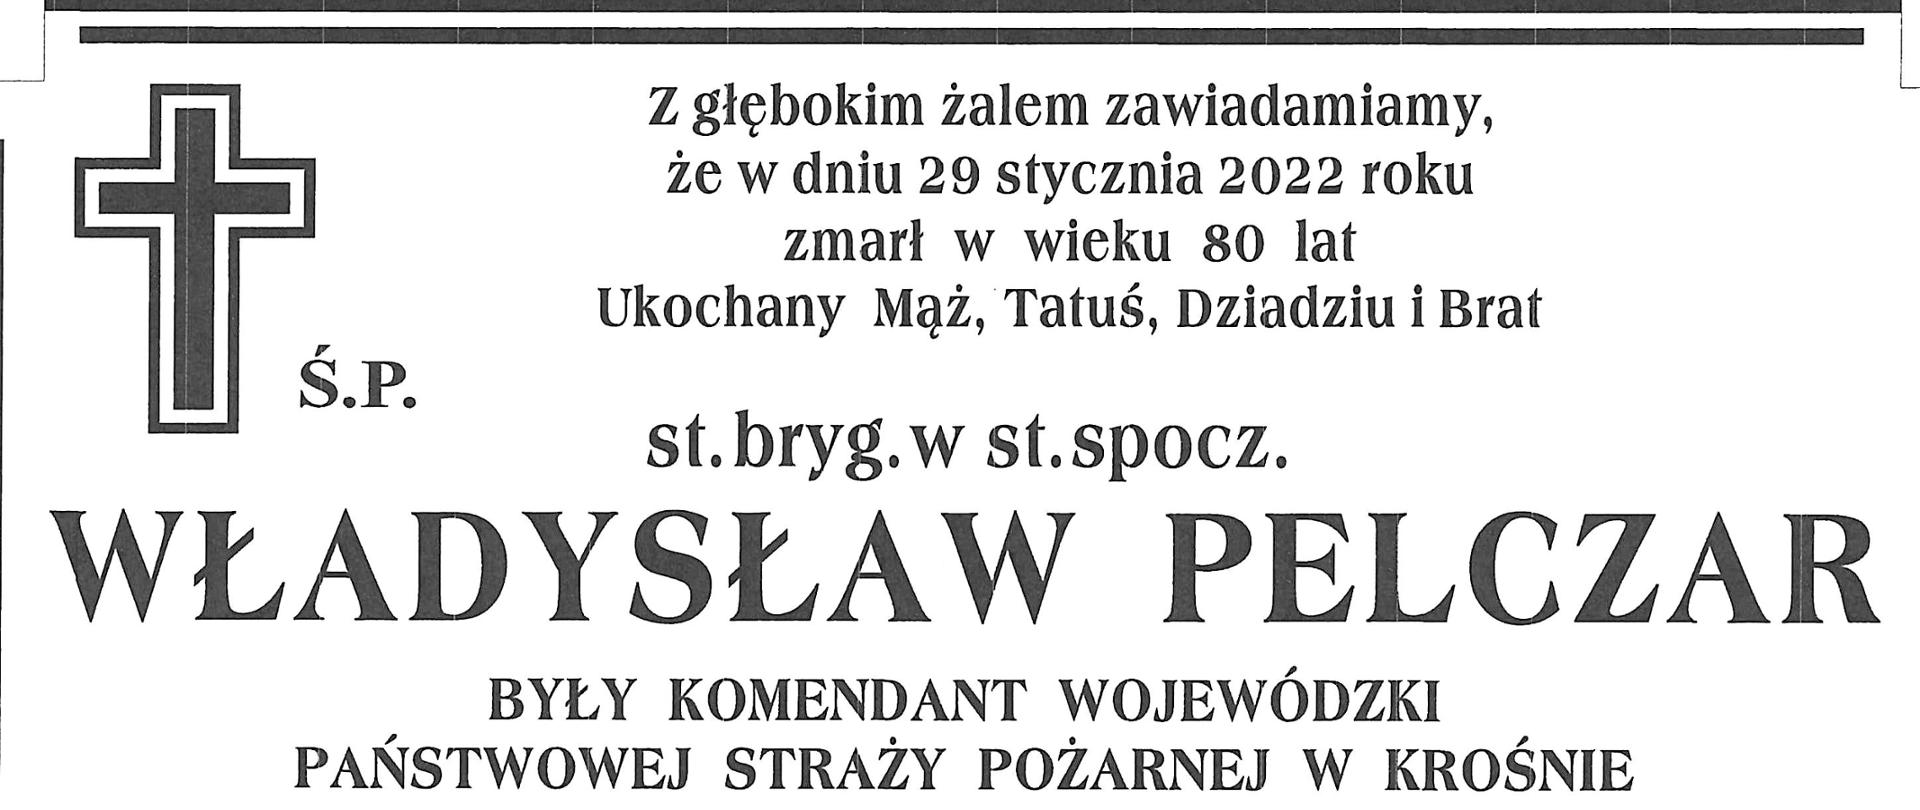 Klepsydra z informacją o śmierci st. bryg. w st. spocz. Władysława Pelczara oraz o szczegółach uroczystości pogrzebowych